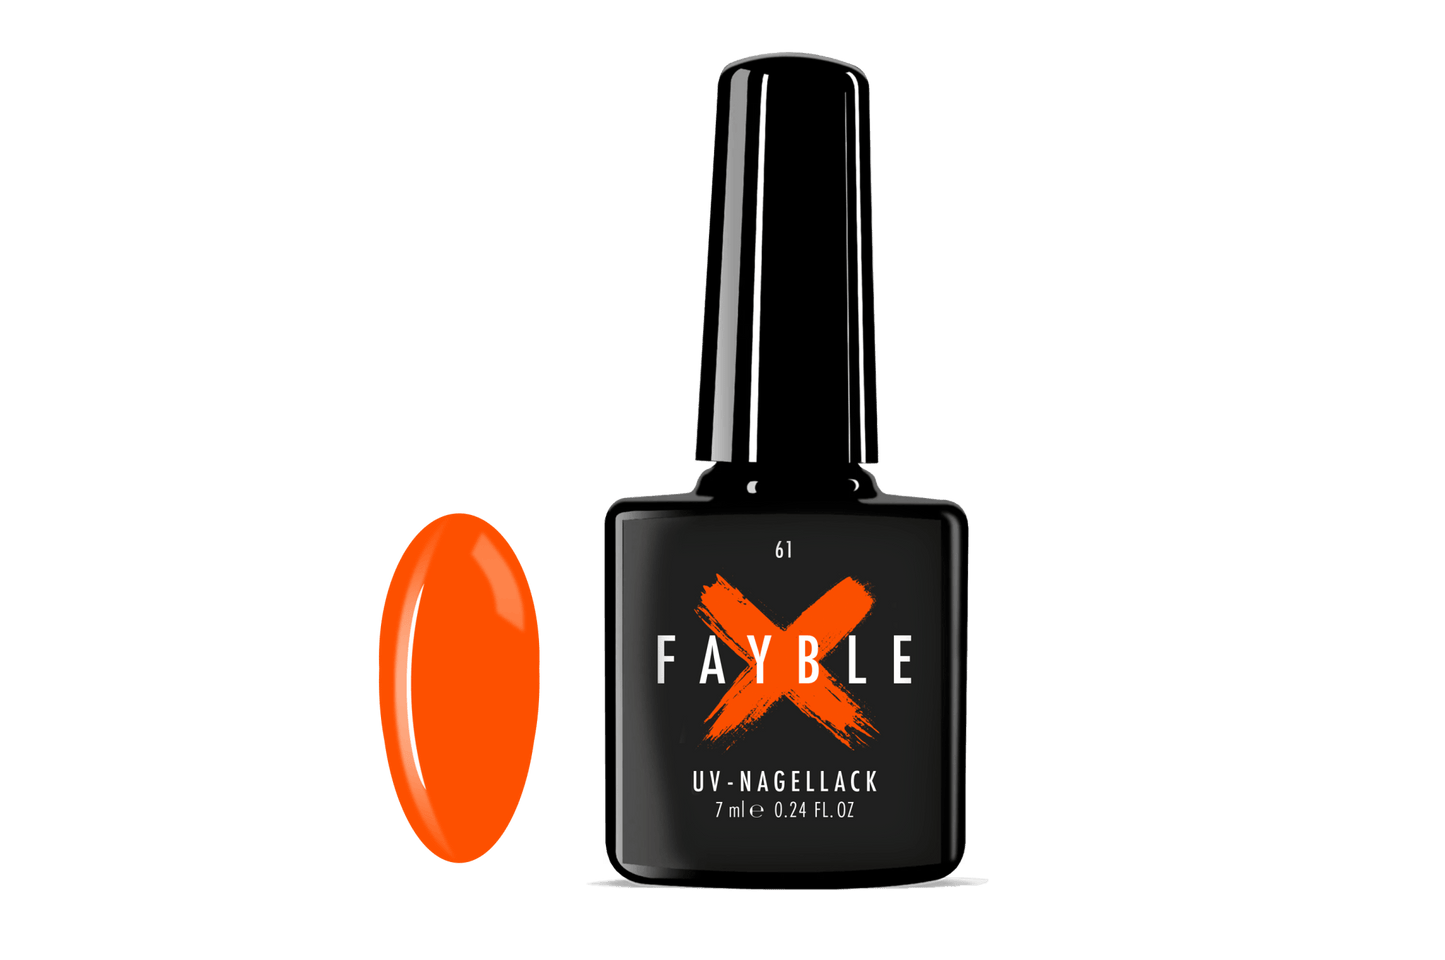 FAYBLE | UV-Nagellack Nr. 61 - FAYBLE